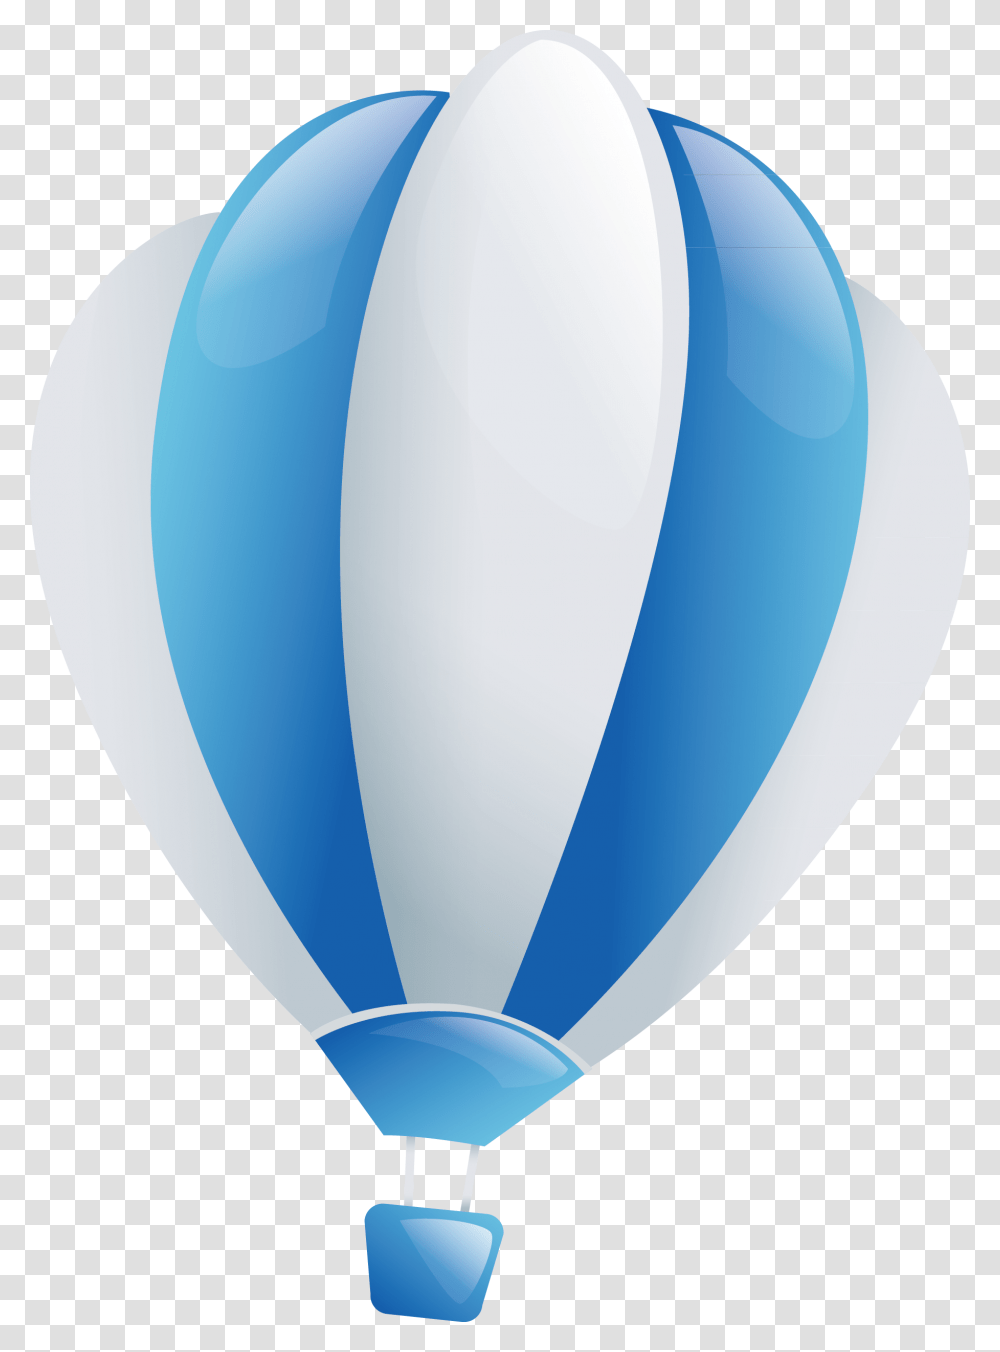 Голубому воздушному шару. Голубой воздушный шар. Синий воздушный шар с корзиной. Воздушный шар голубой вектор. Воздушный шар бело синий.